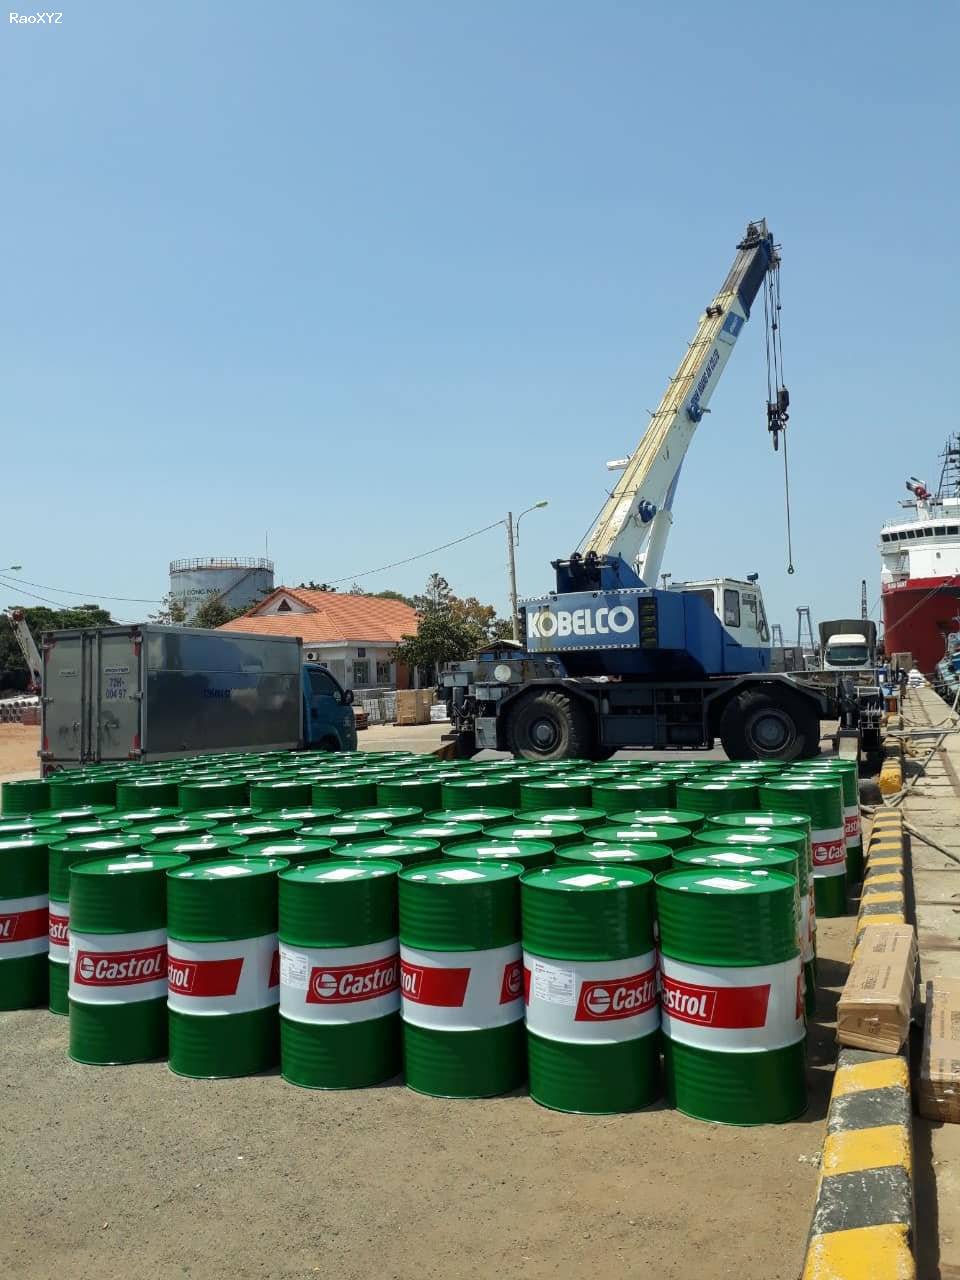 Đại lý mua bán dầu nhớt Castrol Bp chính hãng tại TpHCM, Long An, Bình Dương, Đồng Nai – 0942.71.70.76